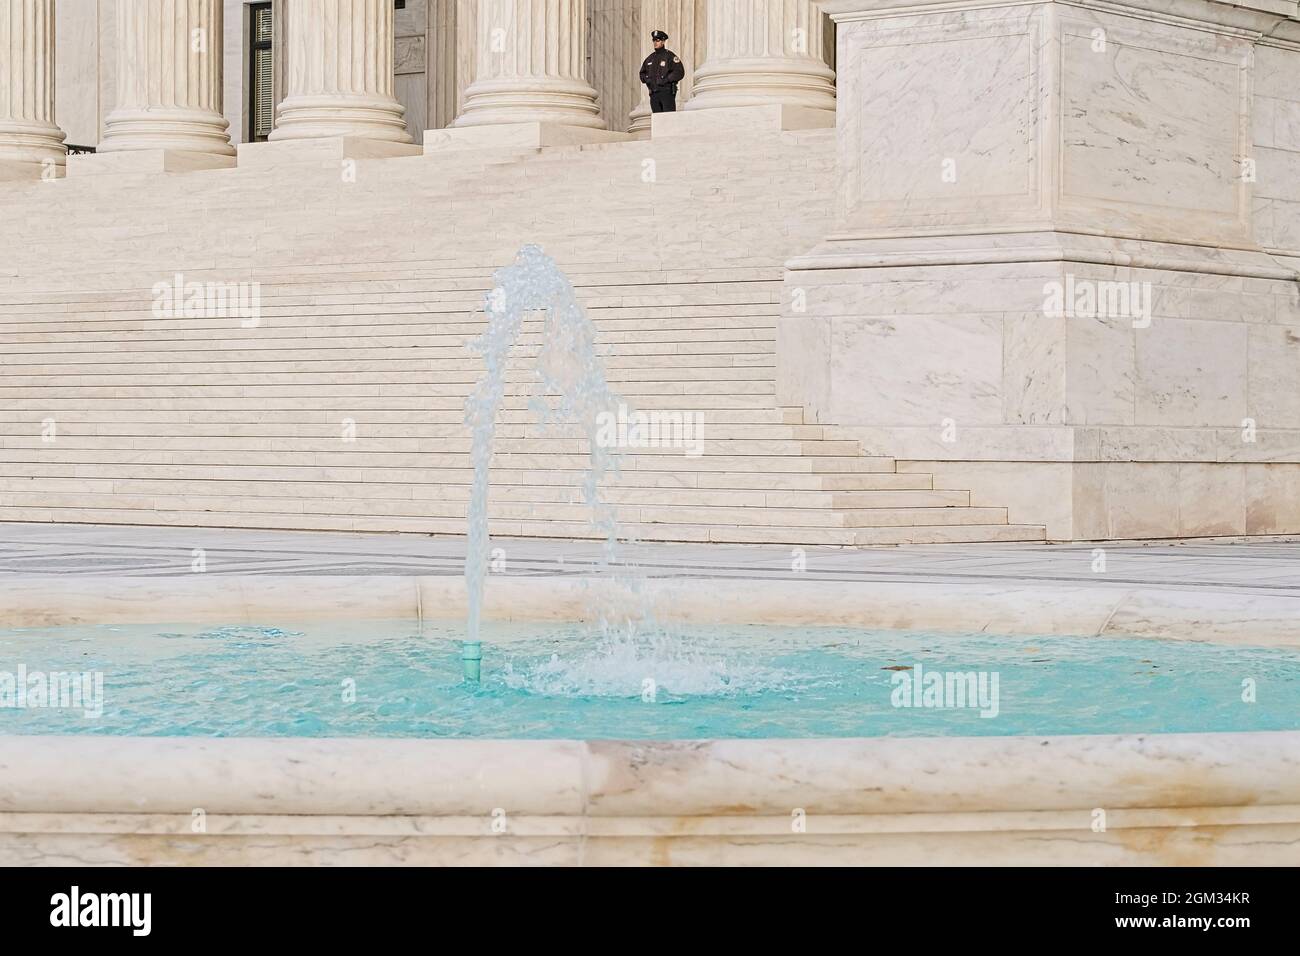 Corte Suprema degli Stati Uniti a Washington DC. La più alta corte federale degli Stati Uniti con il suo stile architettonico neoclassico. Foto Stock